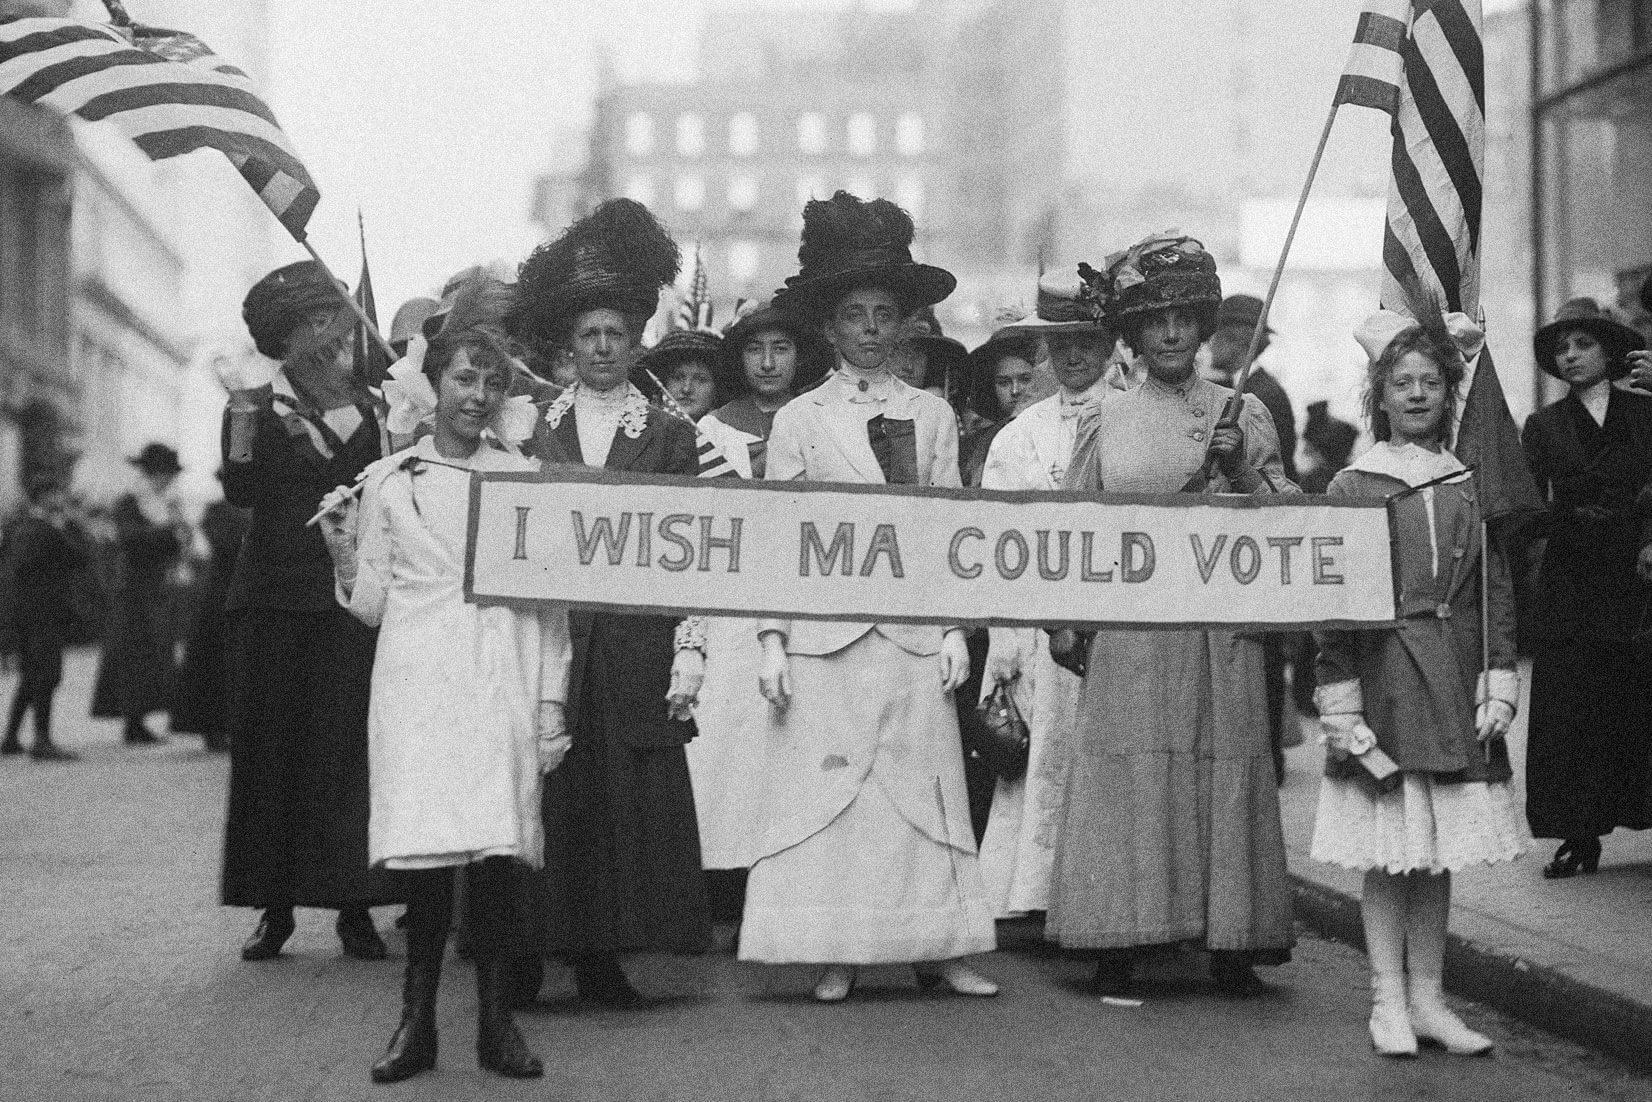 Women's suffrage activists